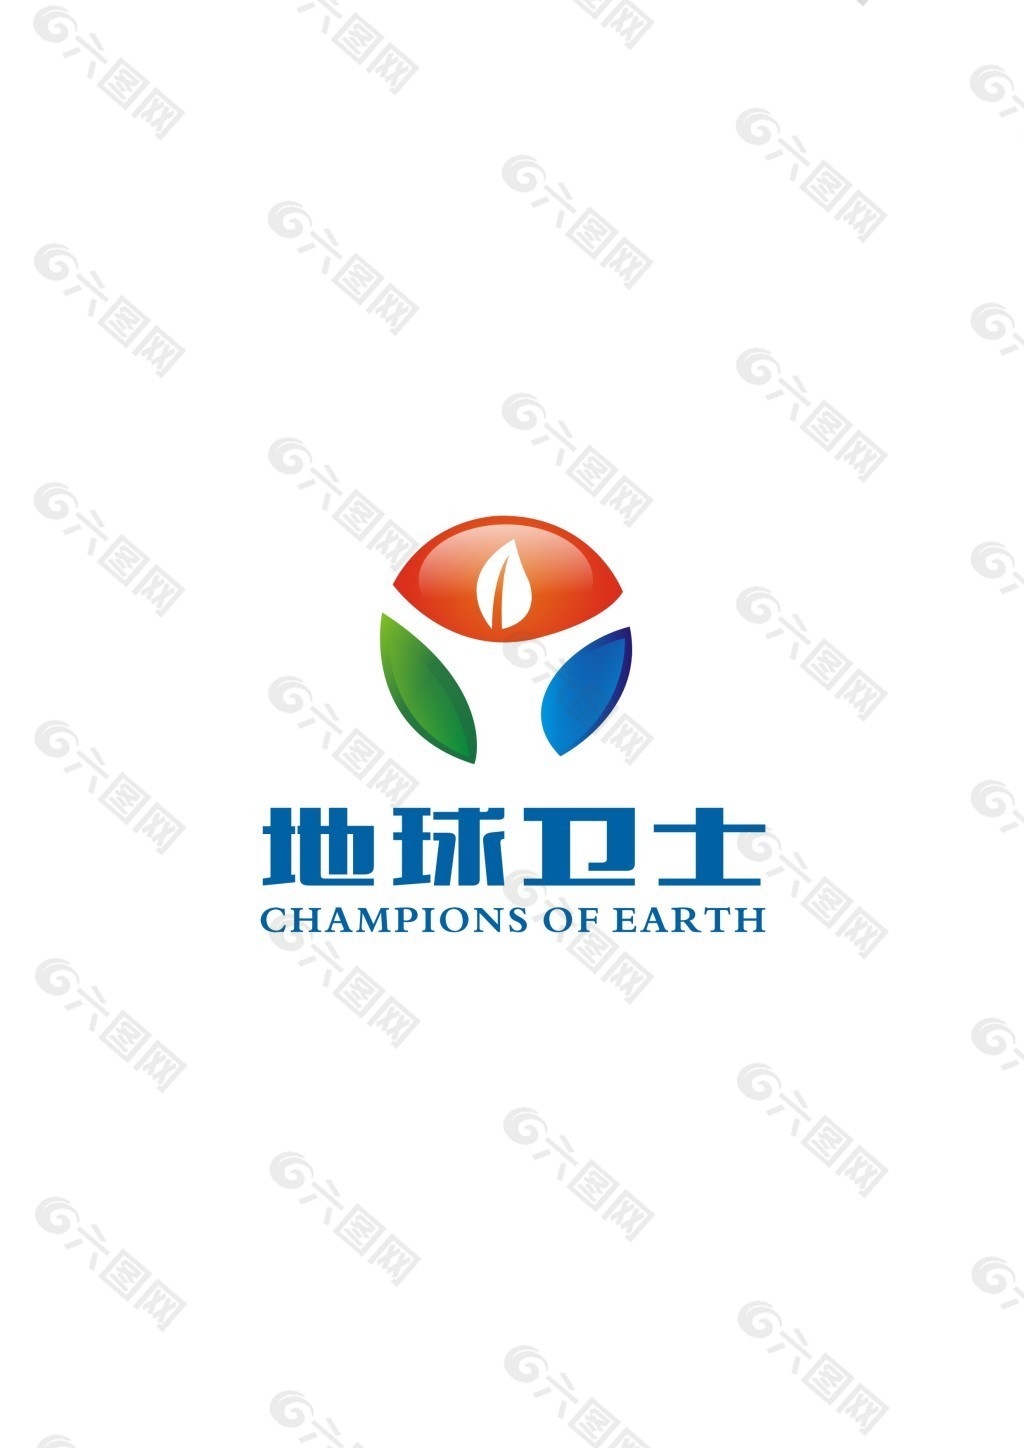 环保公司logo设计图片